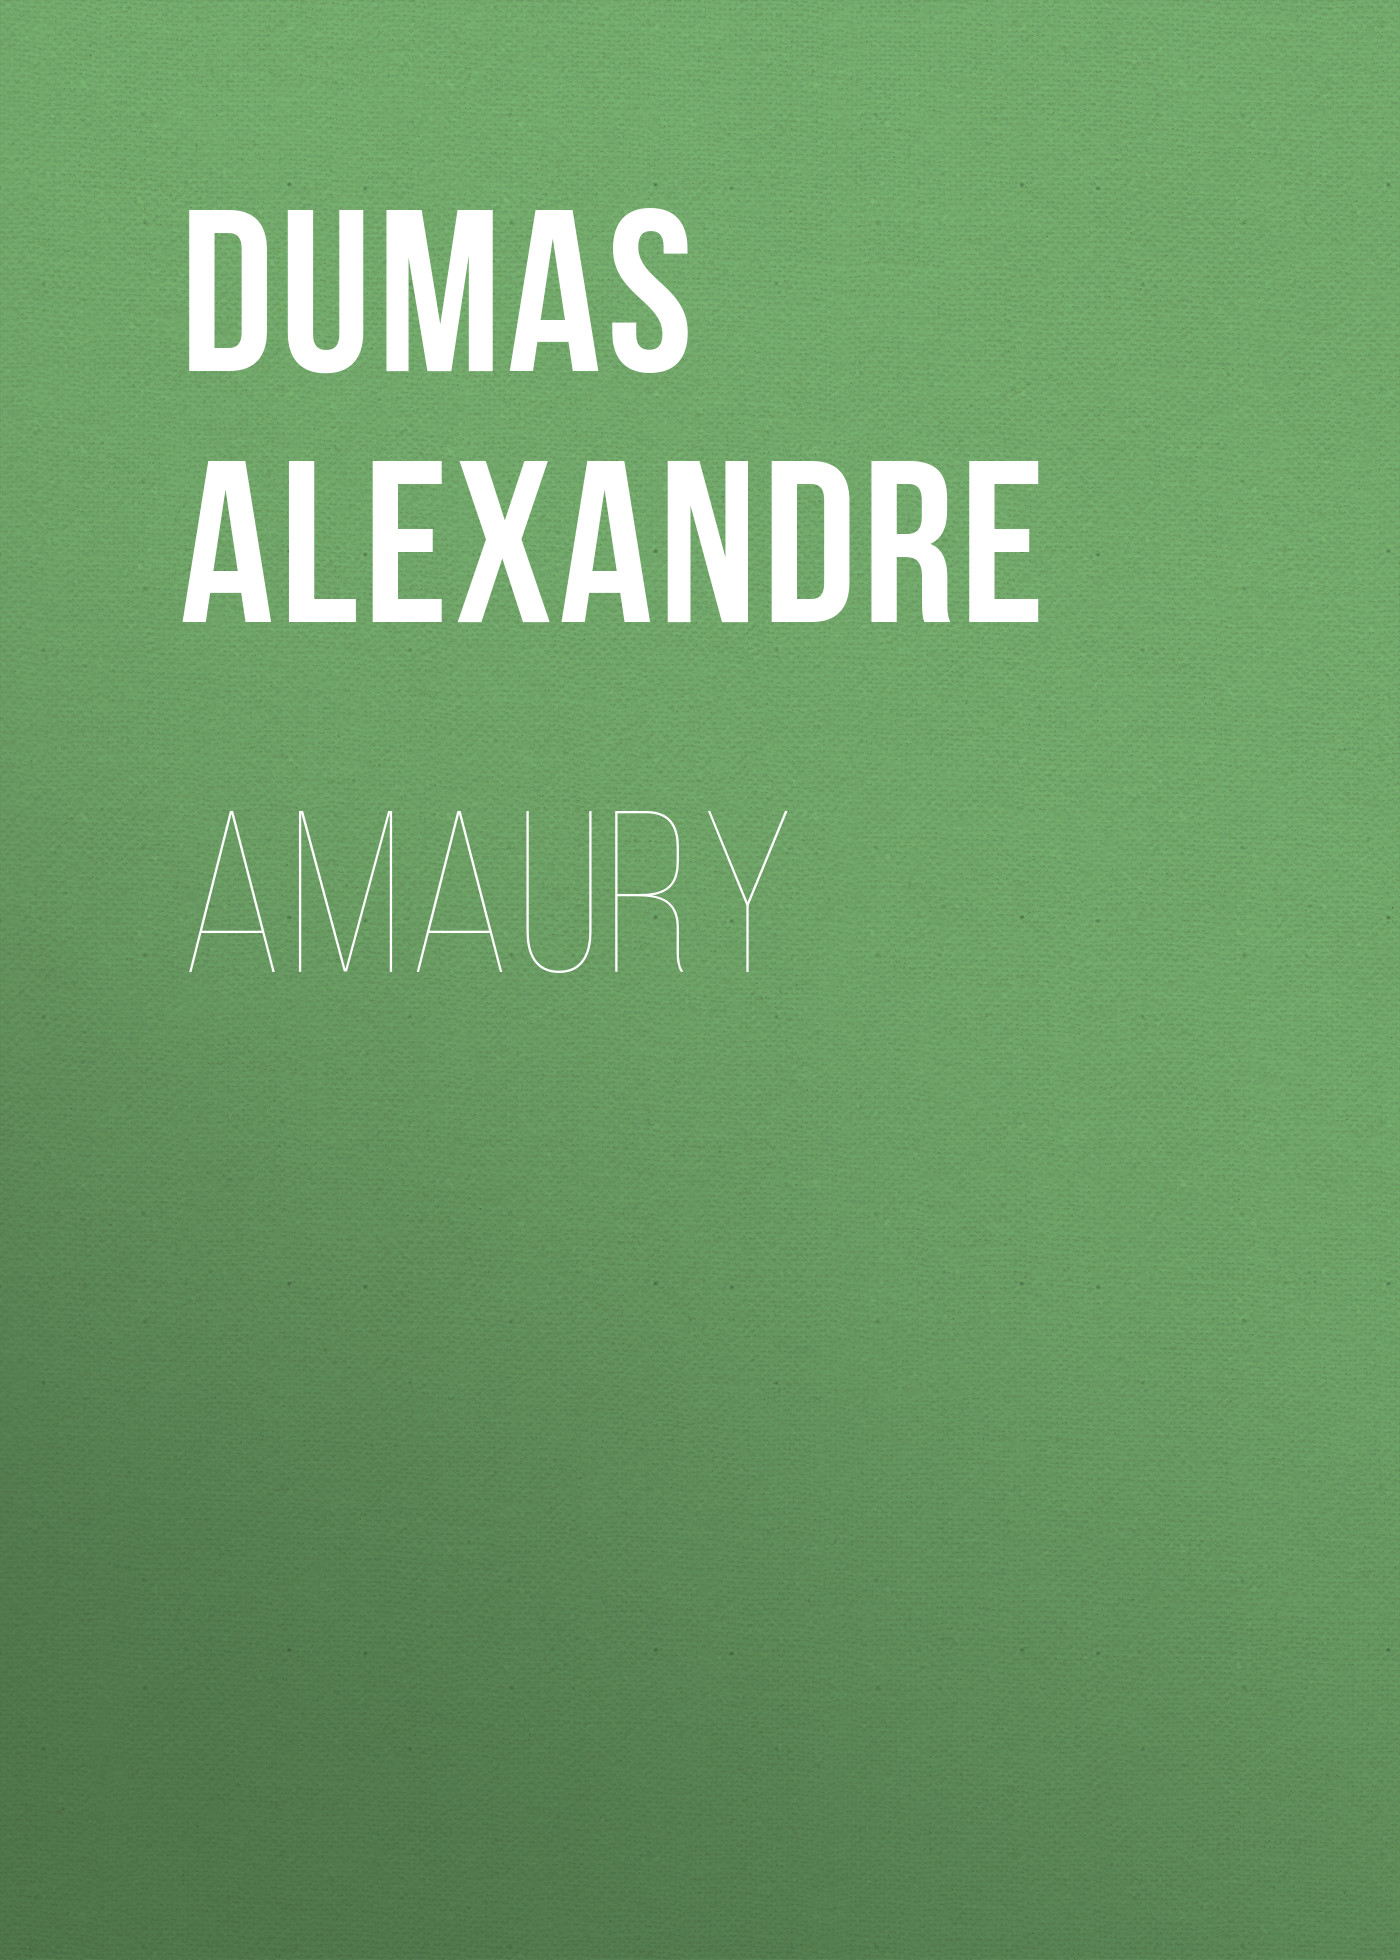 Книга Amaury из серии , созданная Alexandre Dumas, может относится к жанру Литература 19 века, Зарубежная старинная литература, Зарубежная классика. Стоимость электронной книги Amaury с идентификатором 25202967 составляет 0 руб.